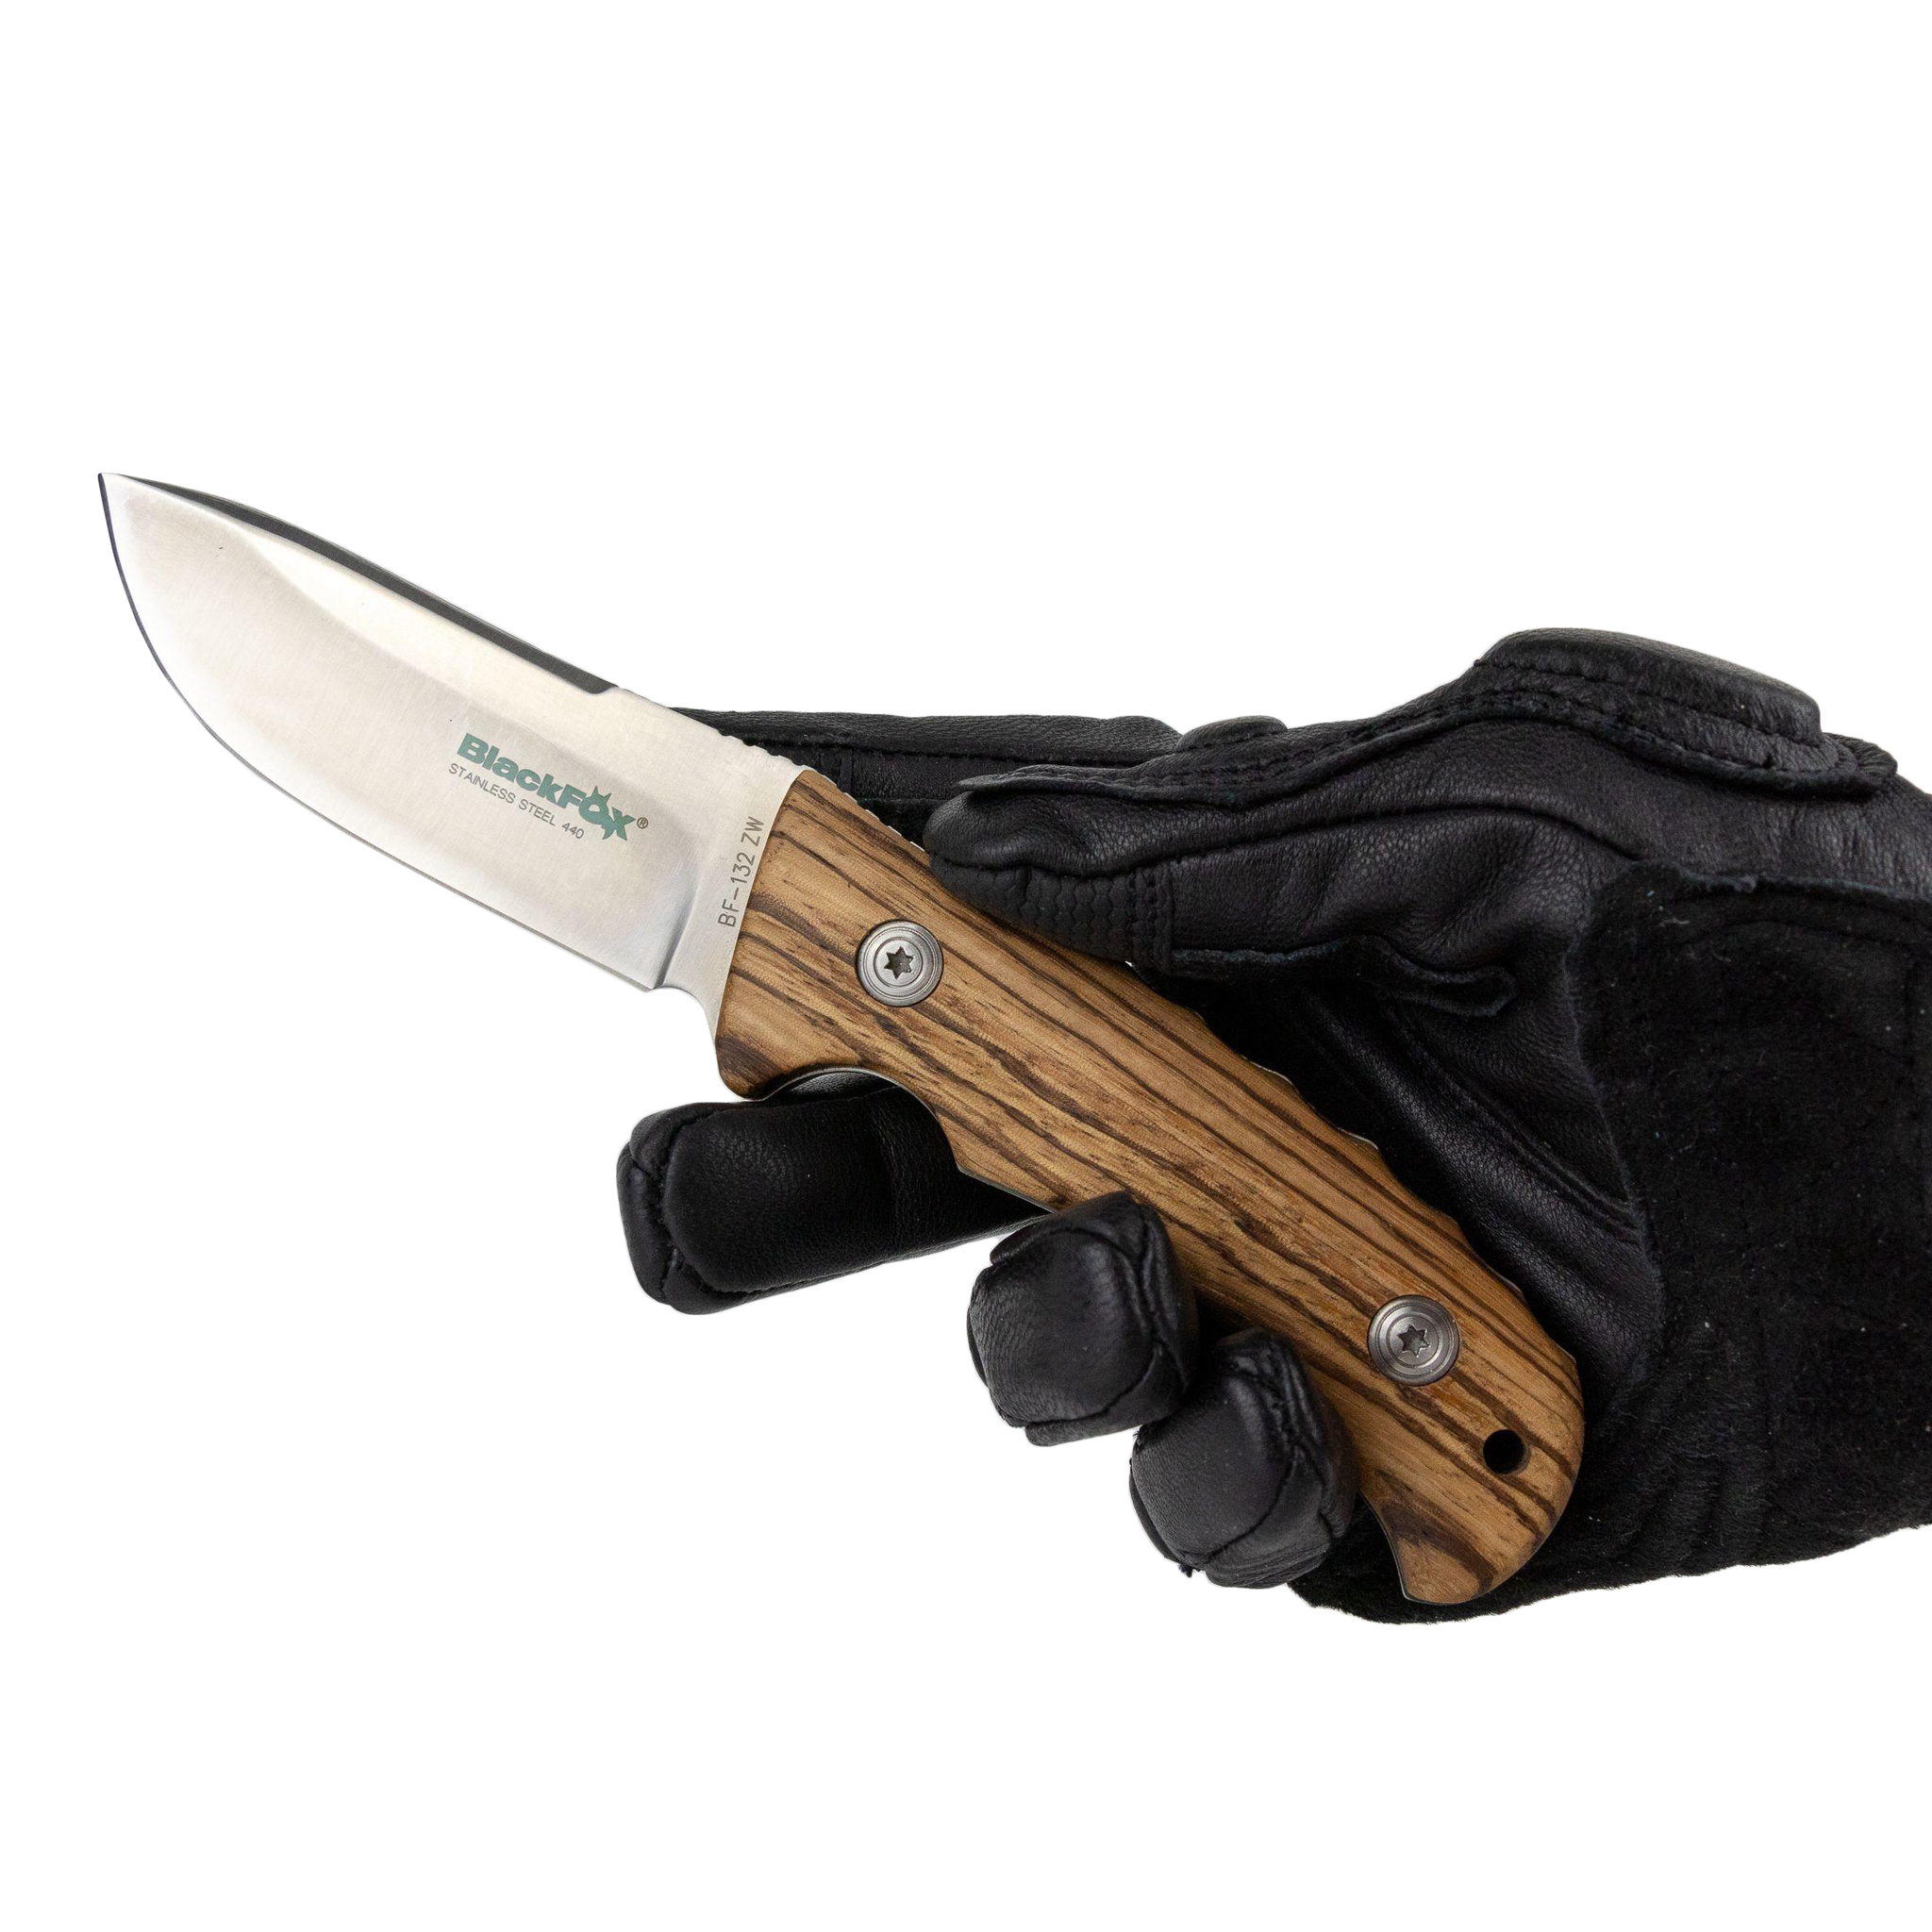 Нож с фиксированным клинком Blackfox Hunter 132 Zebra Wood, сталь 440А, дерево - фото 5